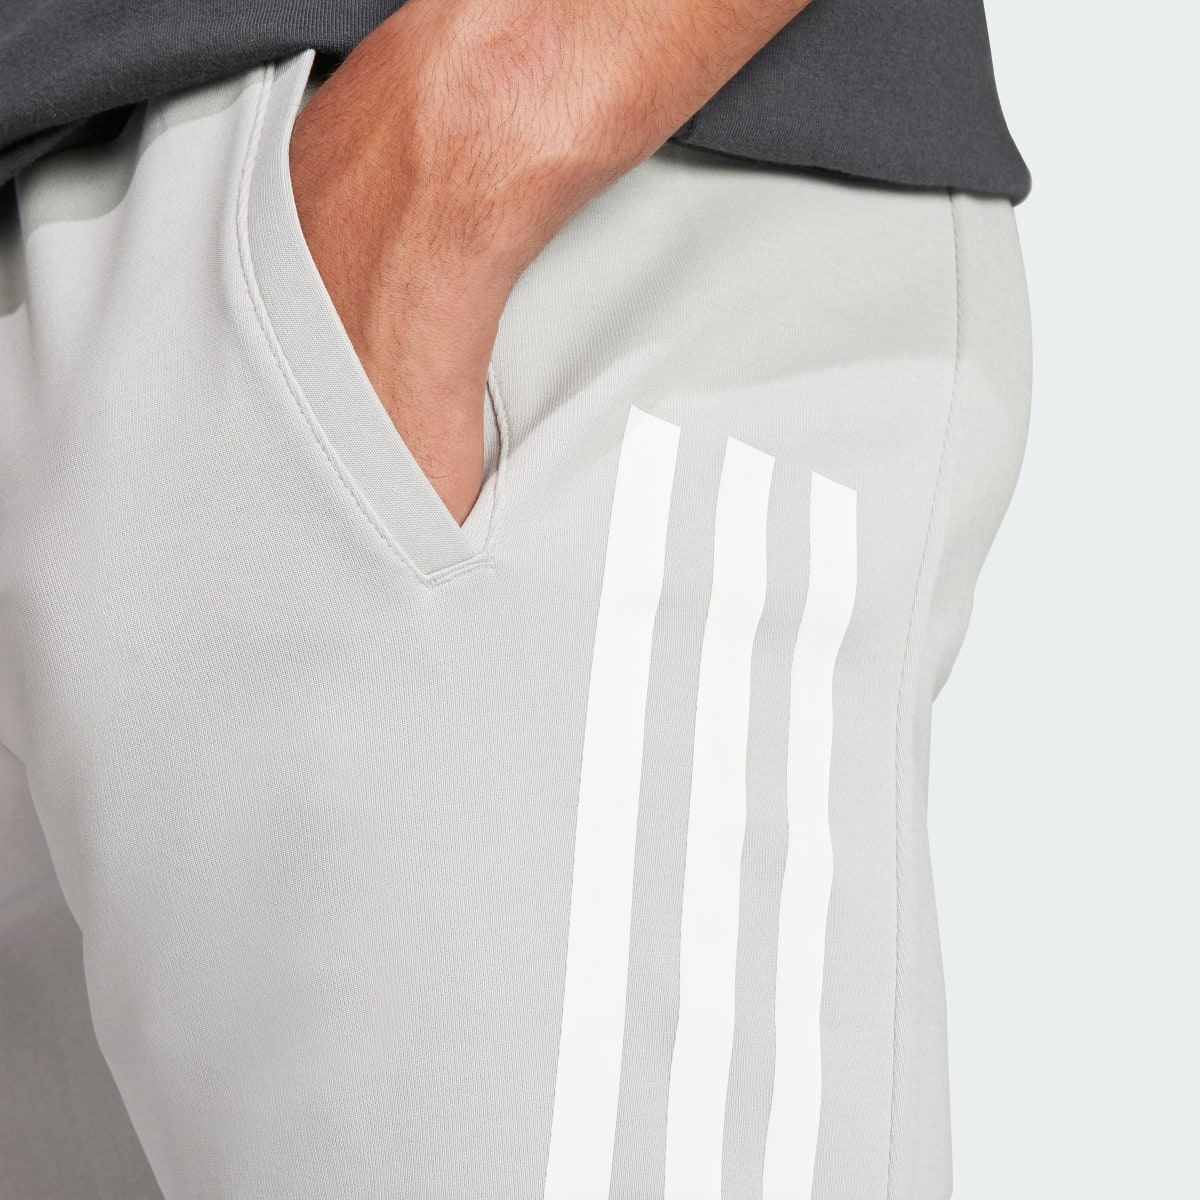 Adidas Future Icons 3-Streifen Hose. 5